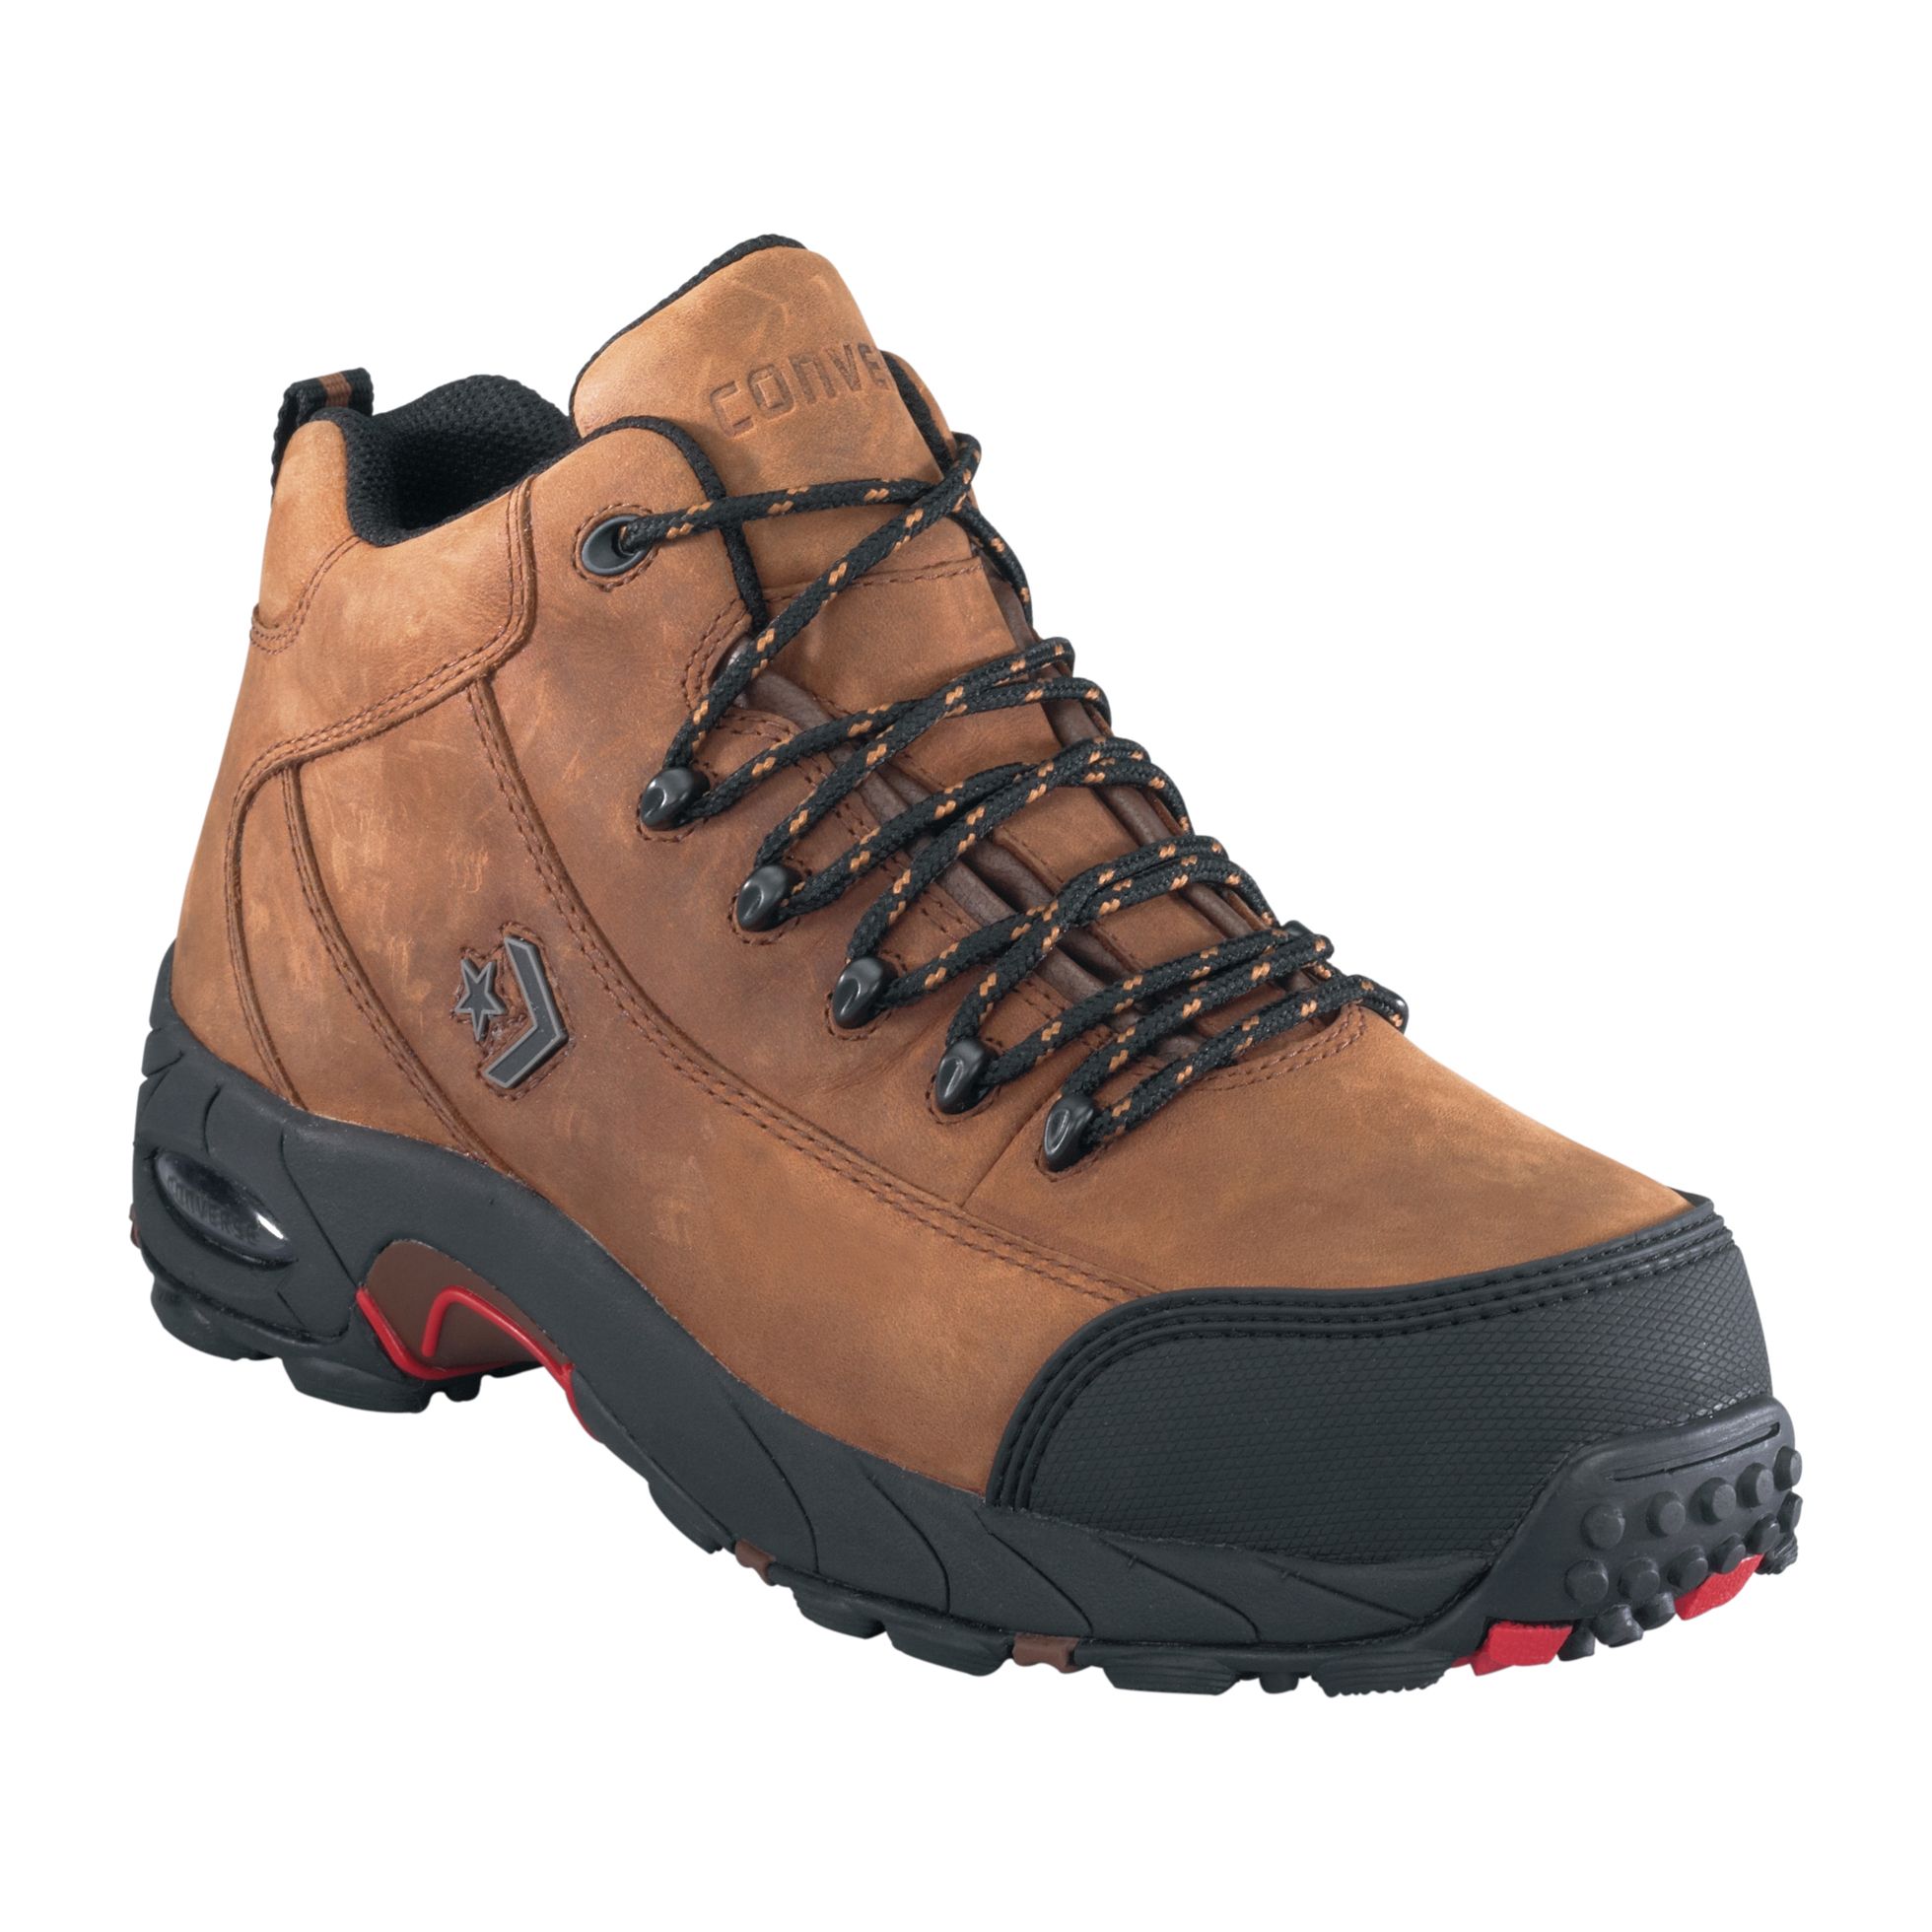 Converse Work Men's Boots Slip-Resistant Sport Hiker Waterproof Brown - C4666